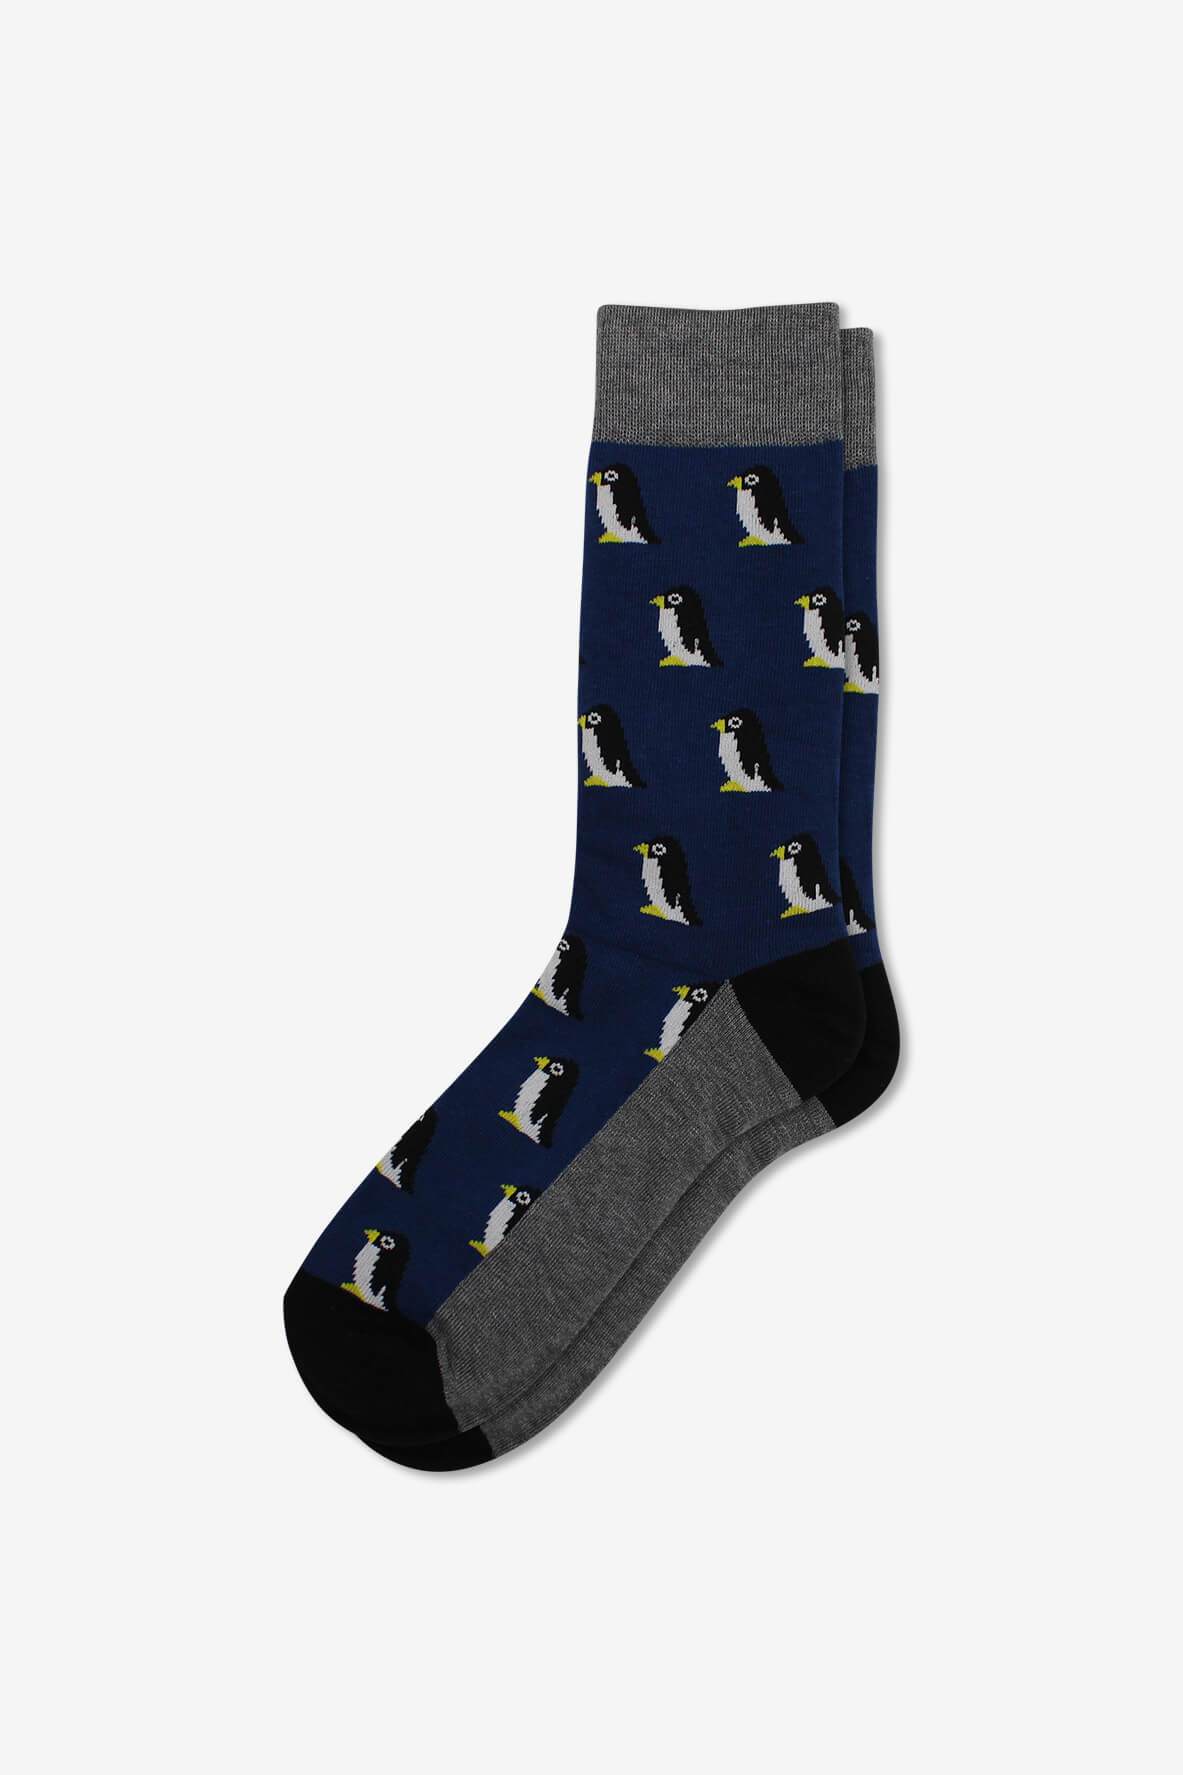 Socks IMG_5257, socks, GoTie